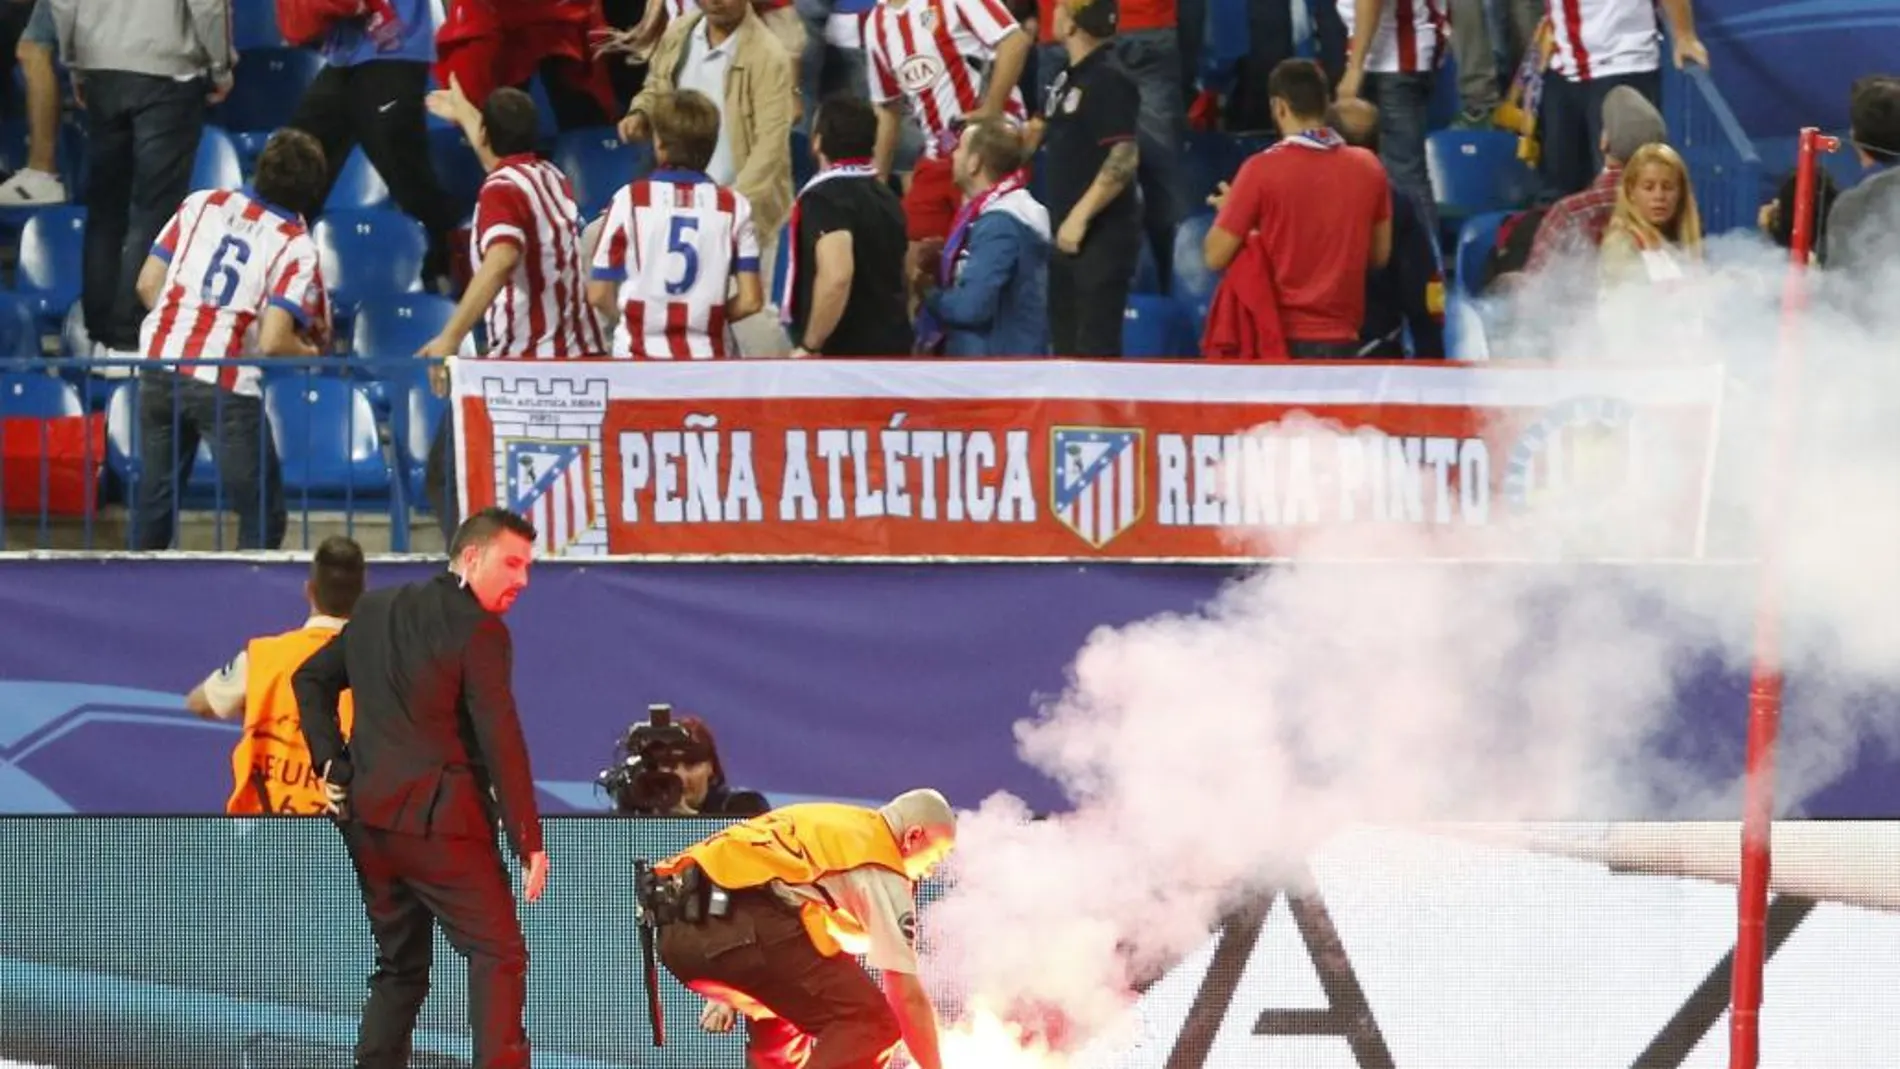 Un operario retira una bengala del terreno de juego durante el partido entre el Atlético de Madrid y el Benfica